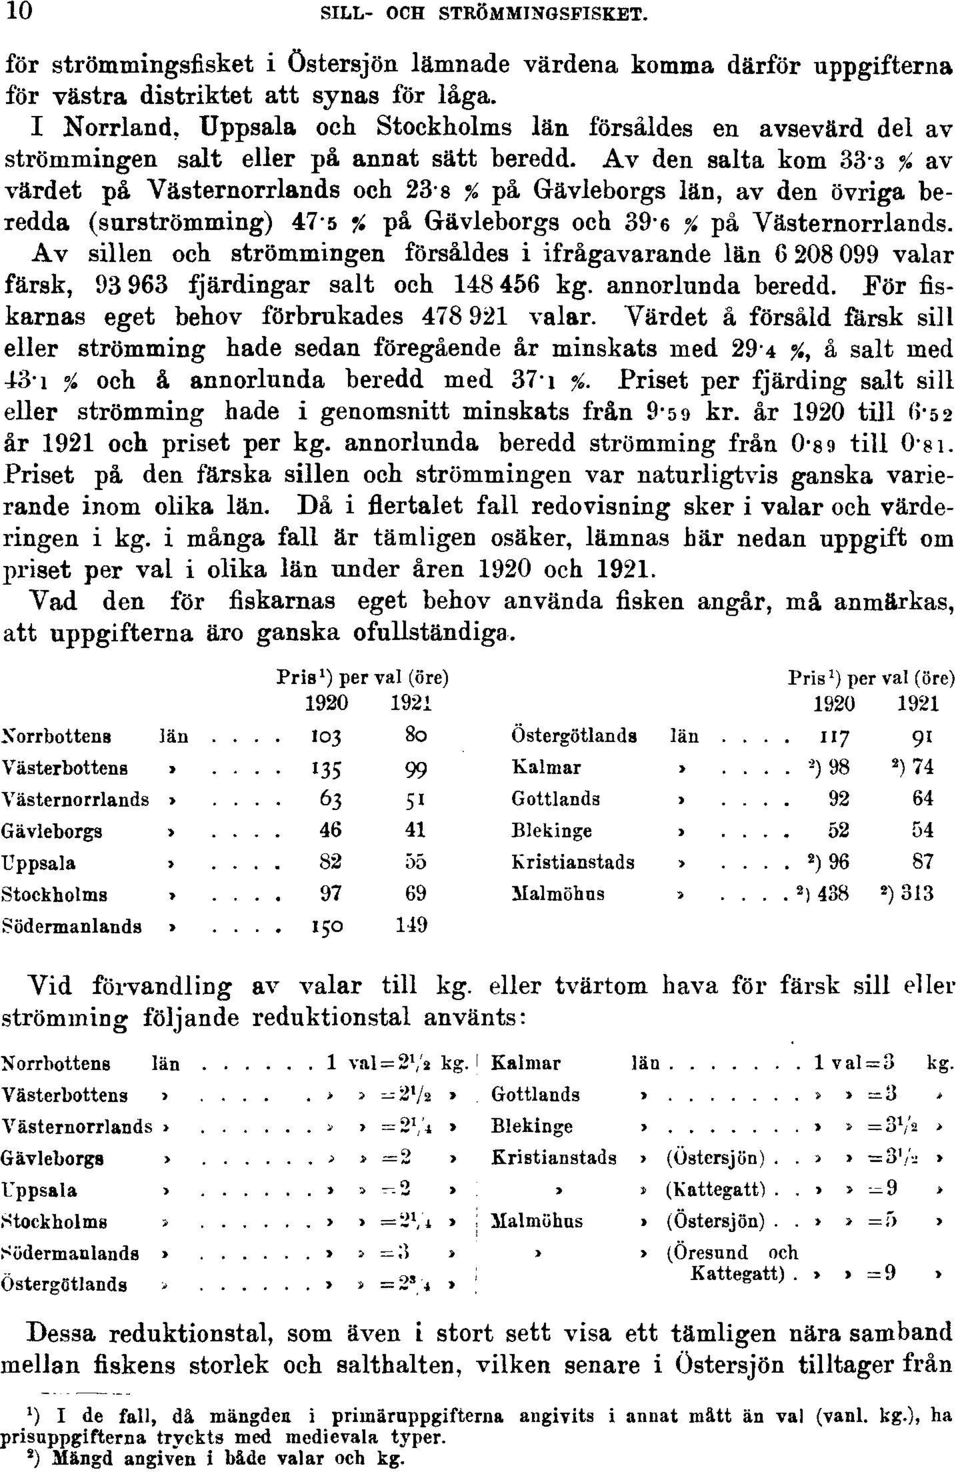 Av den salta kom 33-3 % av värdet på Västernorrlands och 23-8 % på Gävleborgs län, av den övriga beredda (surströmming) 475 % på Gävleborgs och 39-6 % på Västernorrlands.